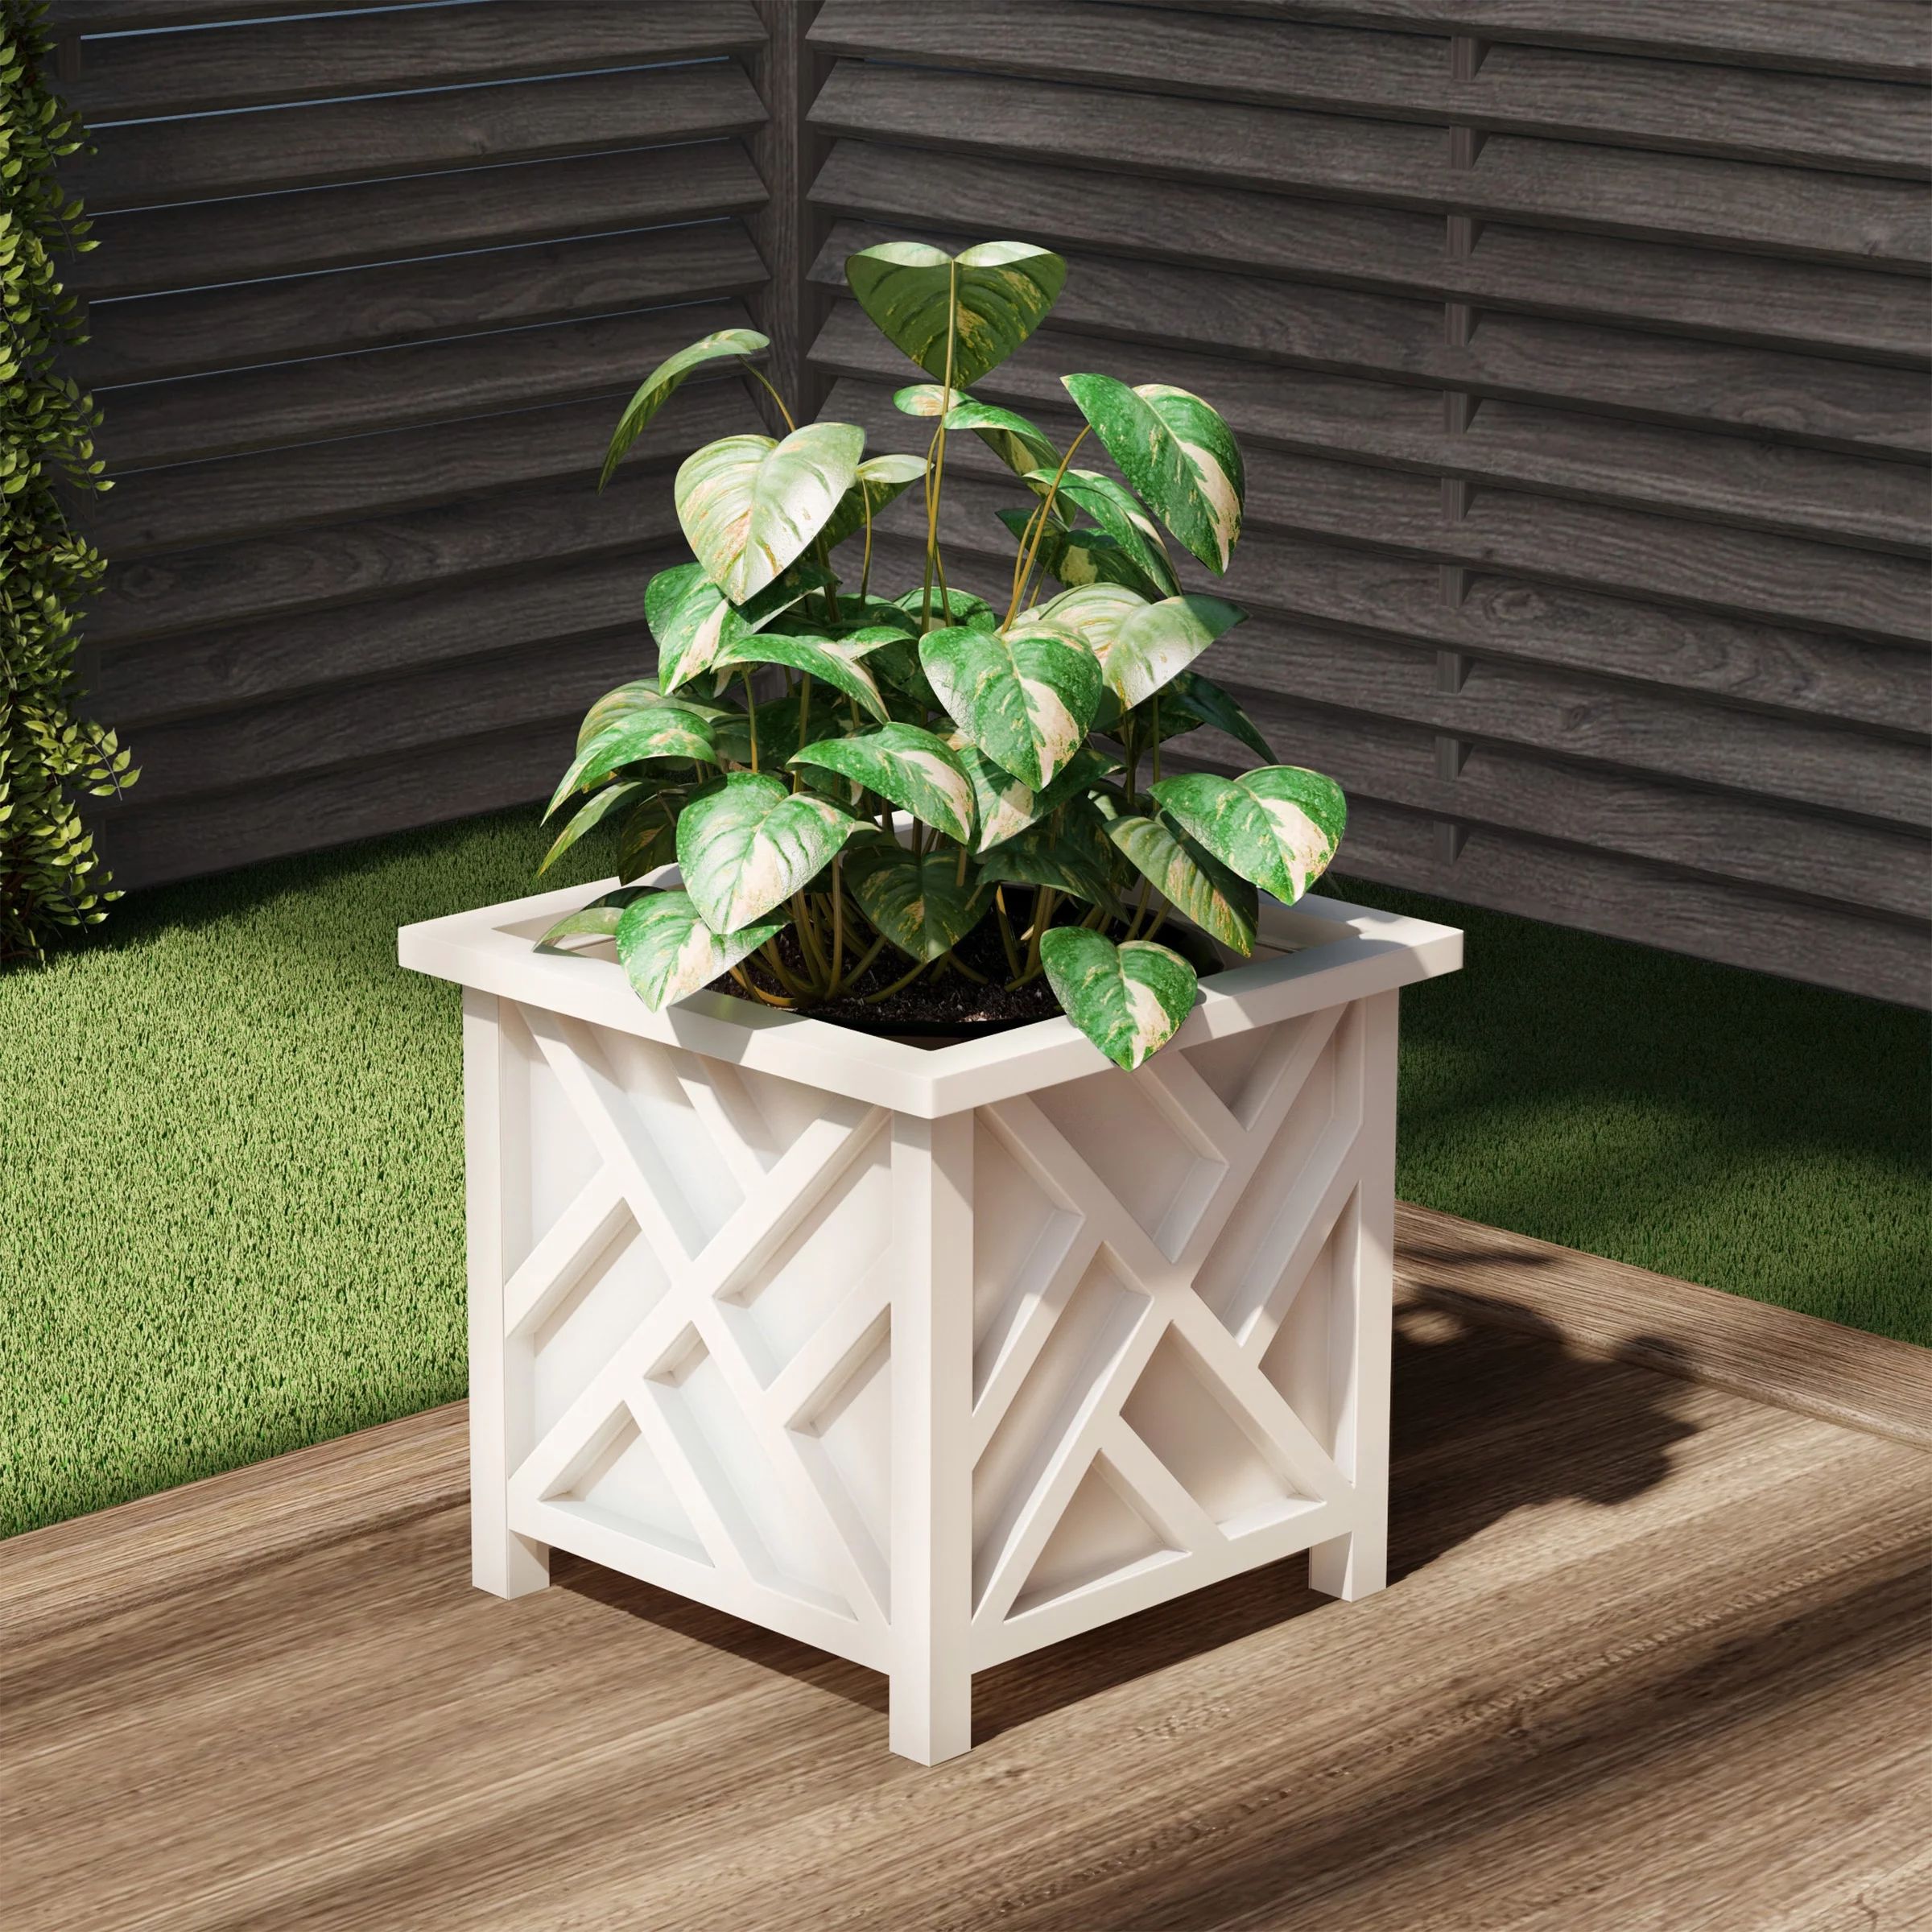 15 inch Planter Box - White Lattice Style - Plant Pot - Front Porch or Patio Decor | Walmart (US)